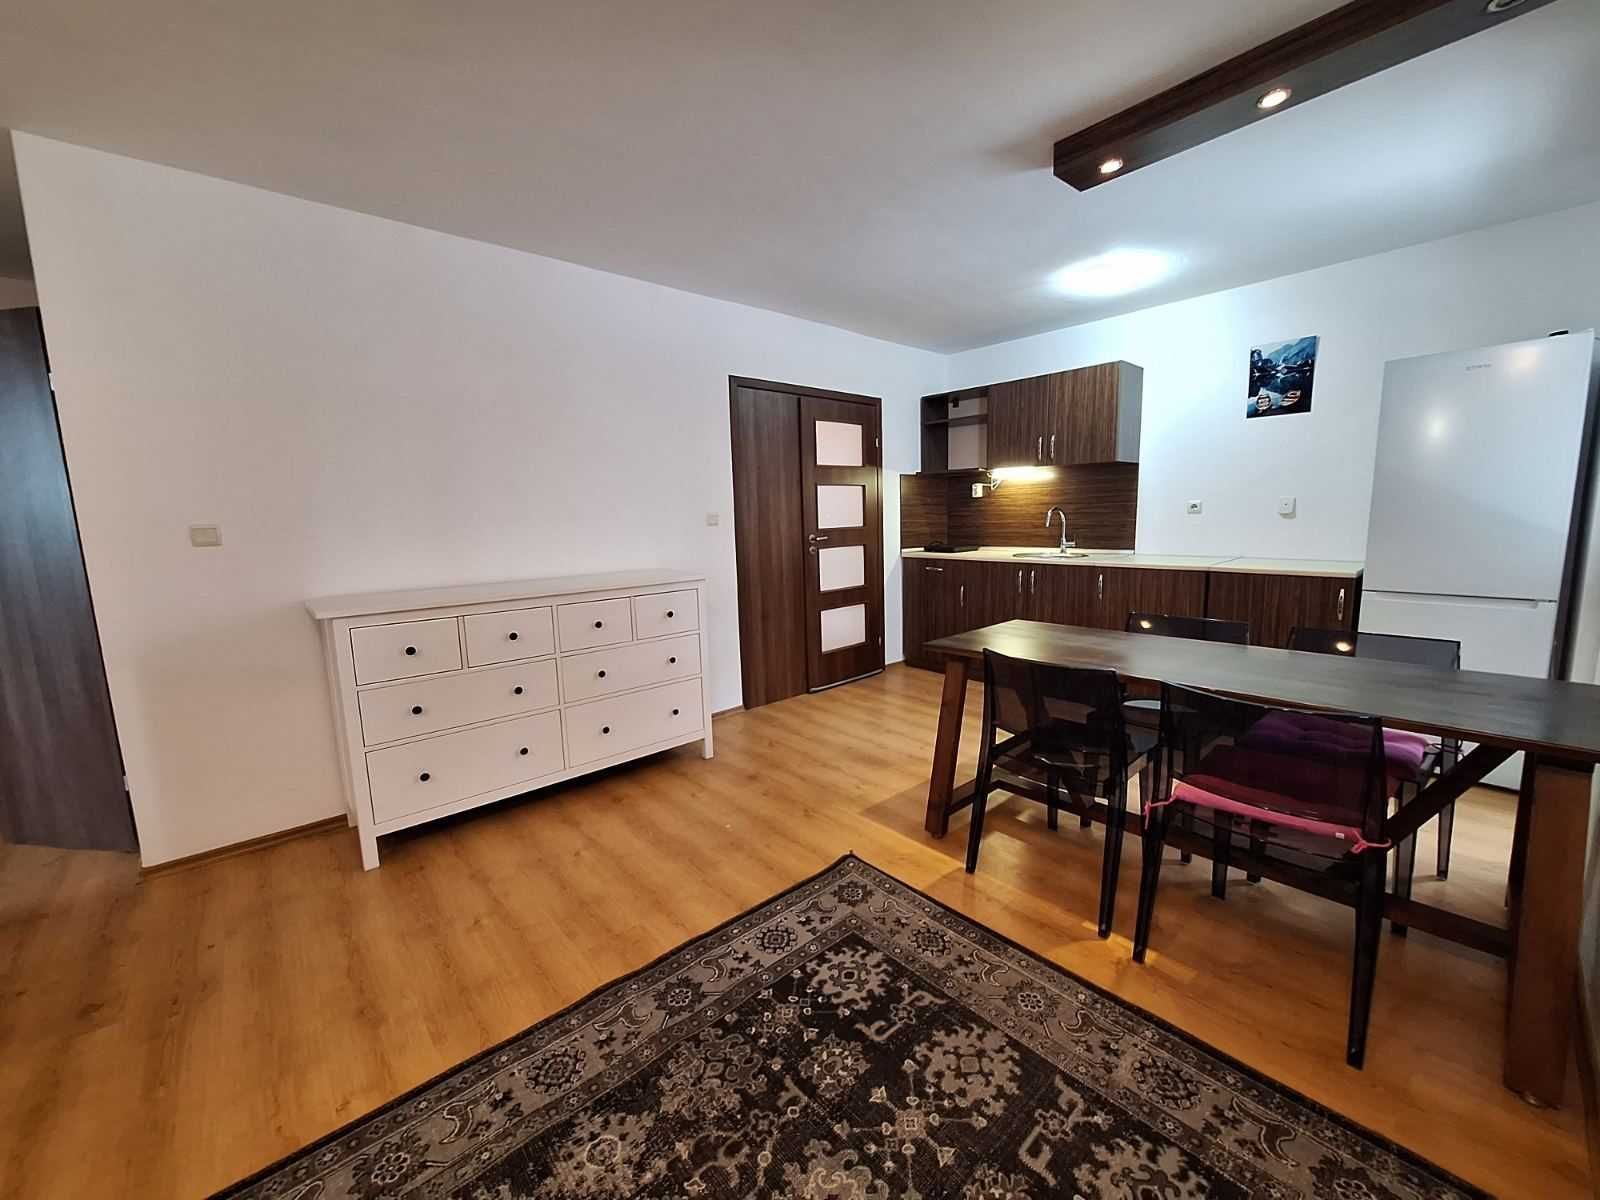 Двустаен апартамент в апартхотел в Банско